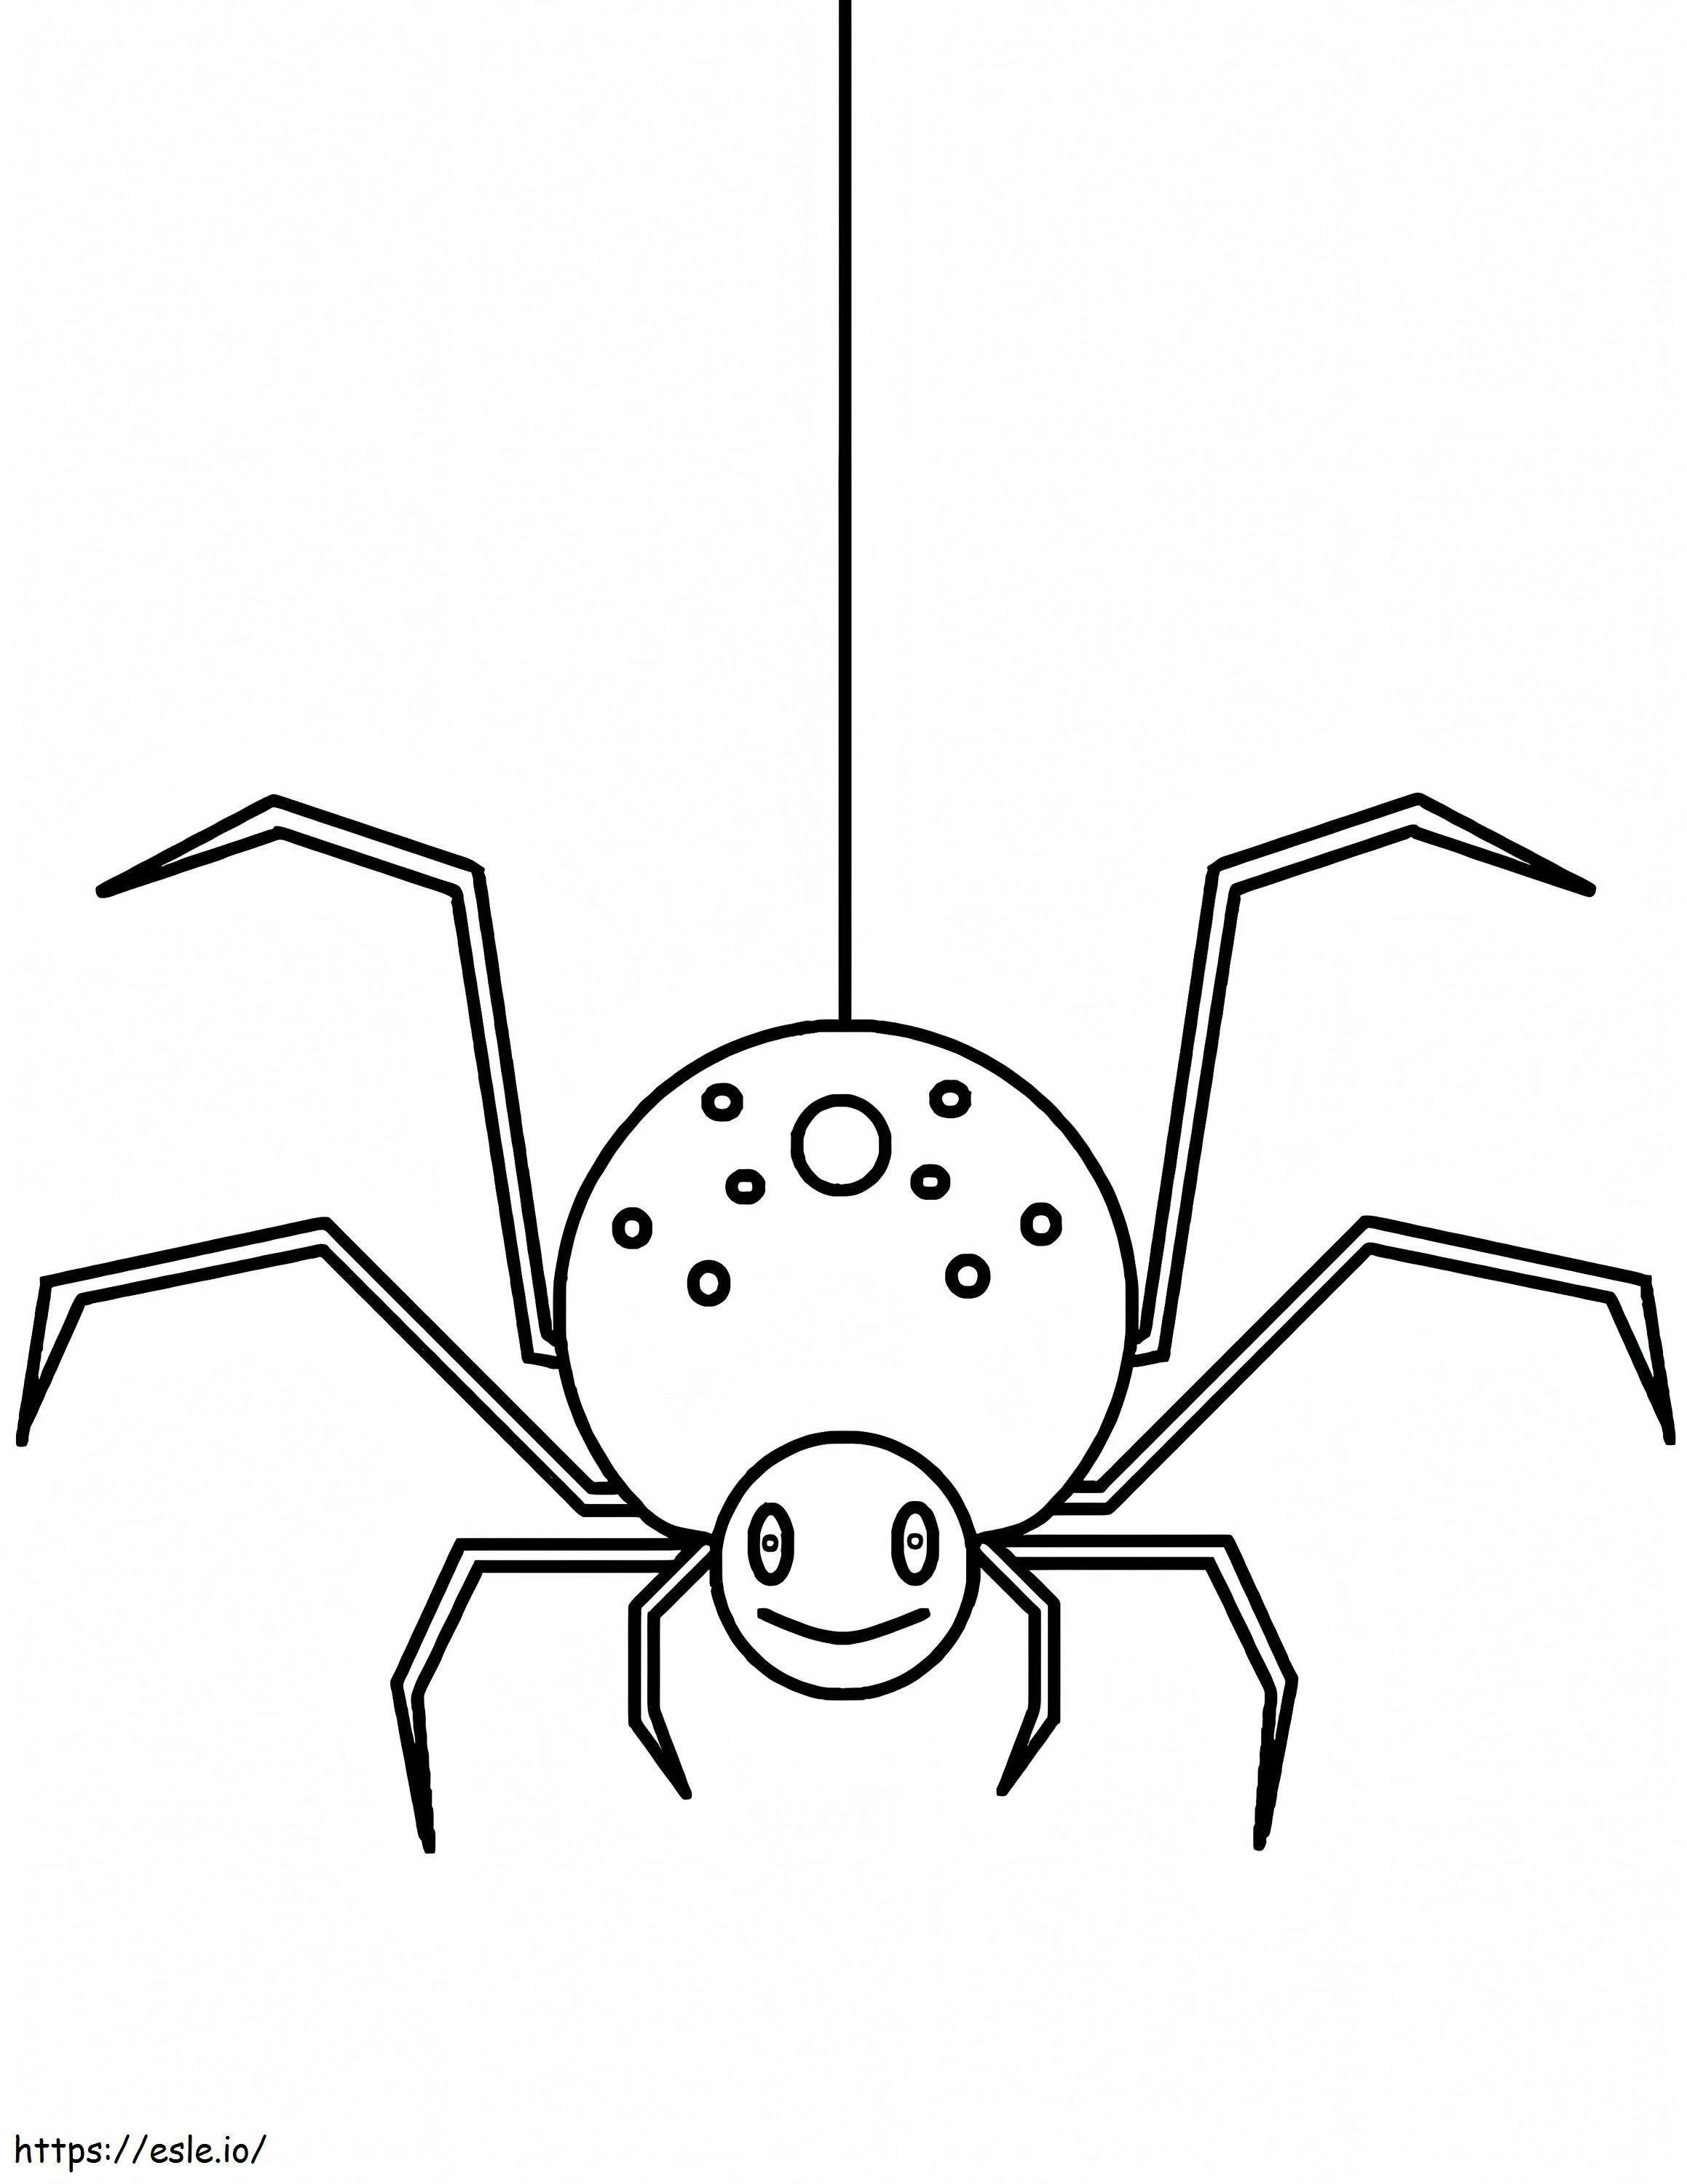 Einfache Spinne ausmalbilder